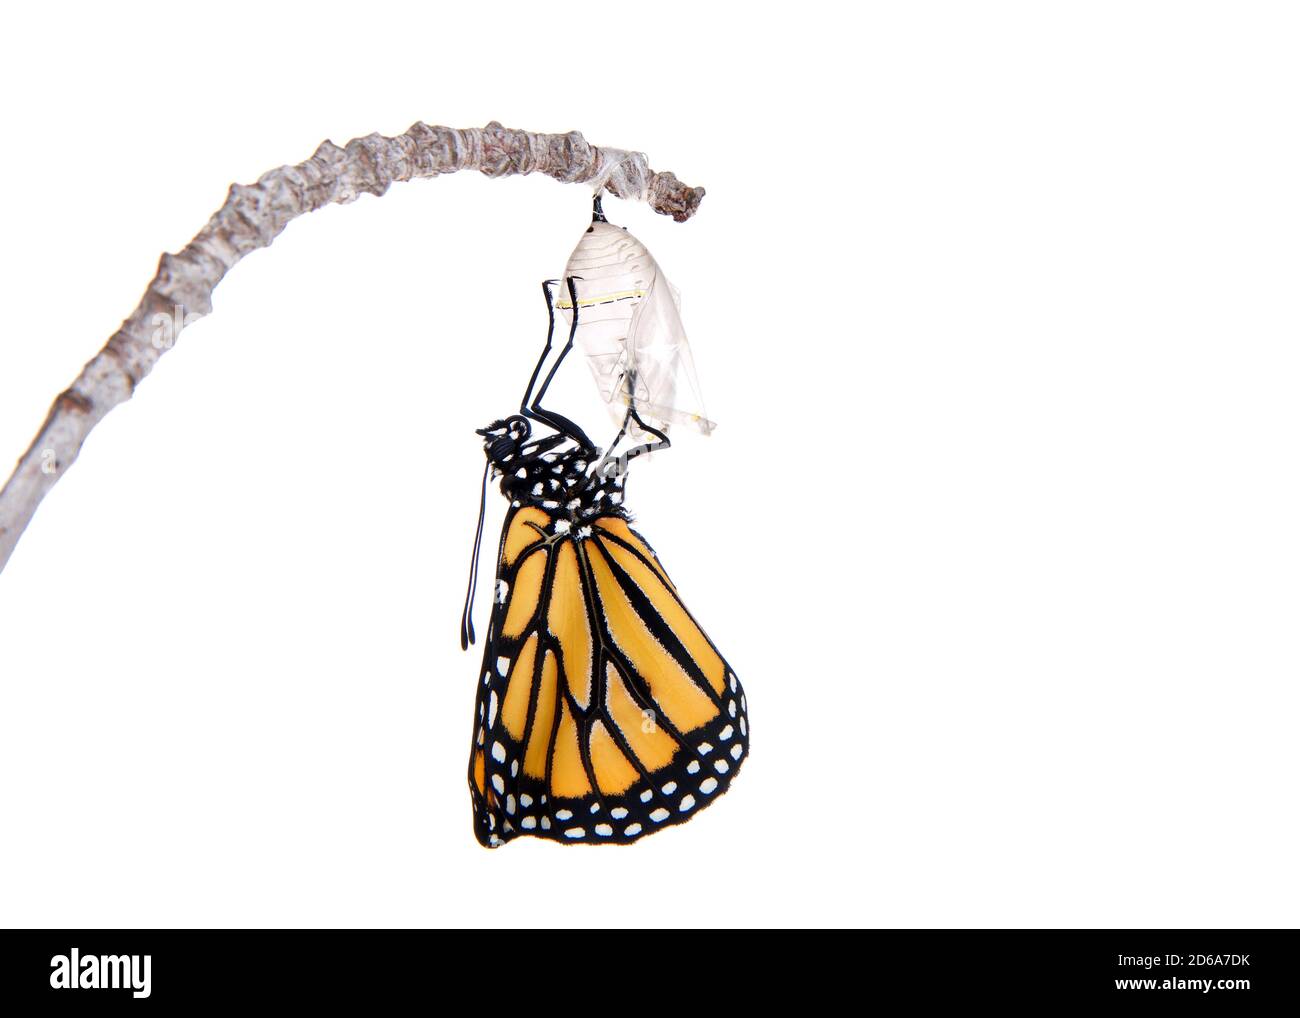 Gros plan d'un monarque papillon vient d'émerger de la chrysalide accrochée sur une petite branche, ailes pliées de l'enceinte. Isolé sur blanc. Banque D'Images